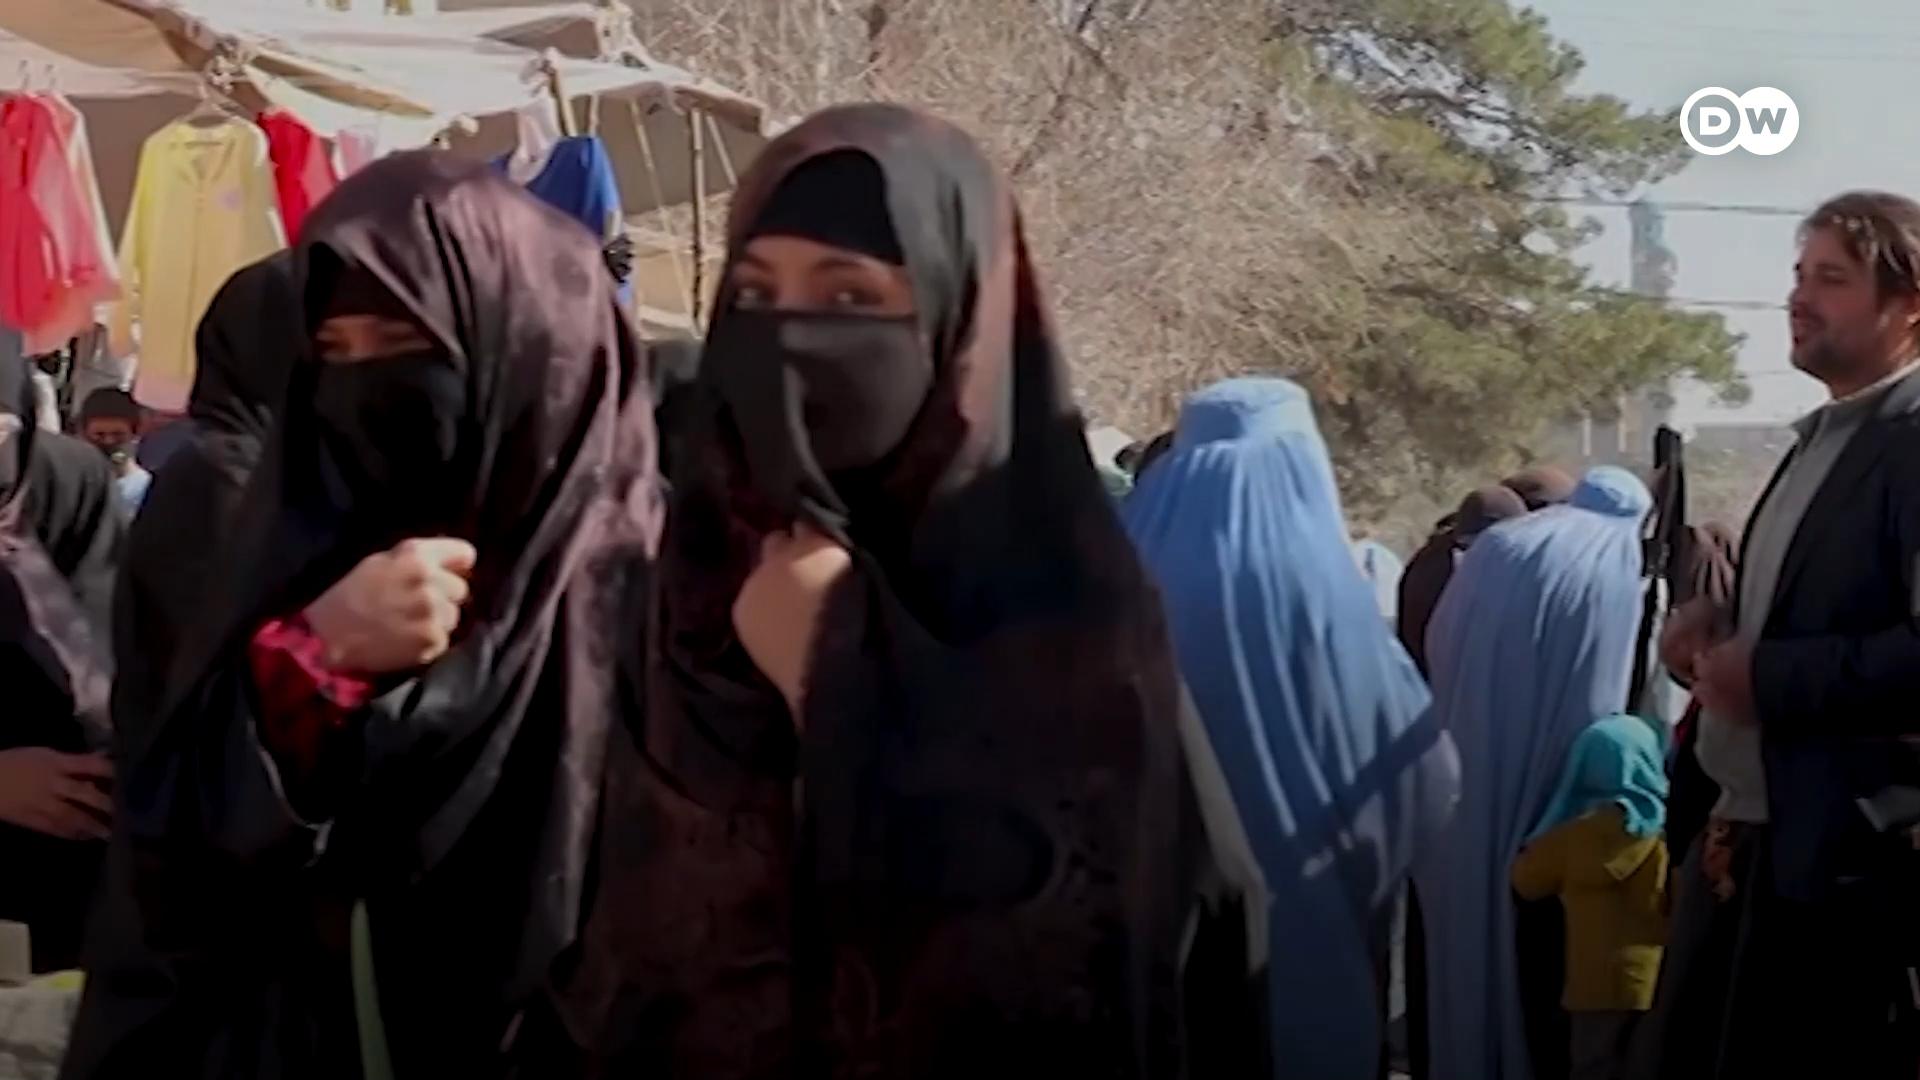  طالبان کی حکومت نے خواتین کو عوامی مقامات پر سر سے پاؤں تک مکمل پردہ کرنے اور چہرہ ڈھانپنے کے لیے کہا ہے۔ 